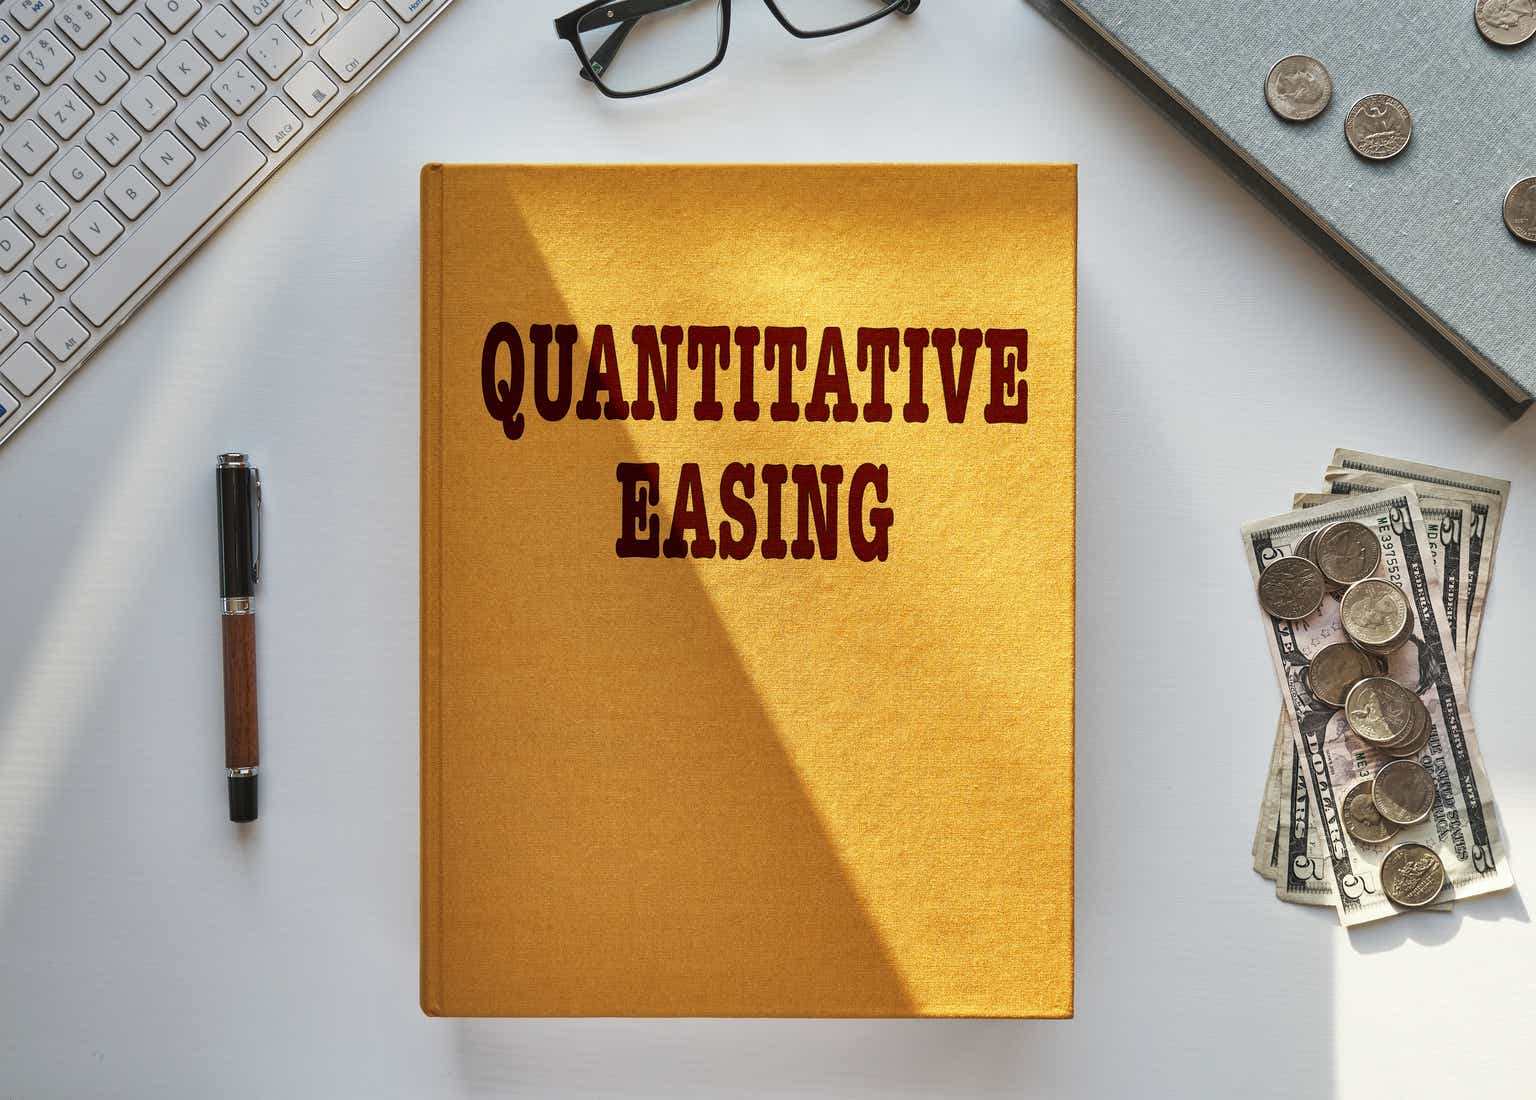 Quantitative easing book illiustration